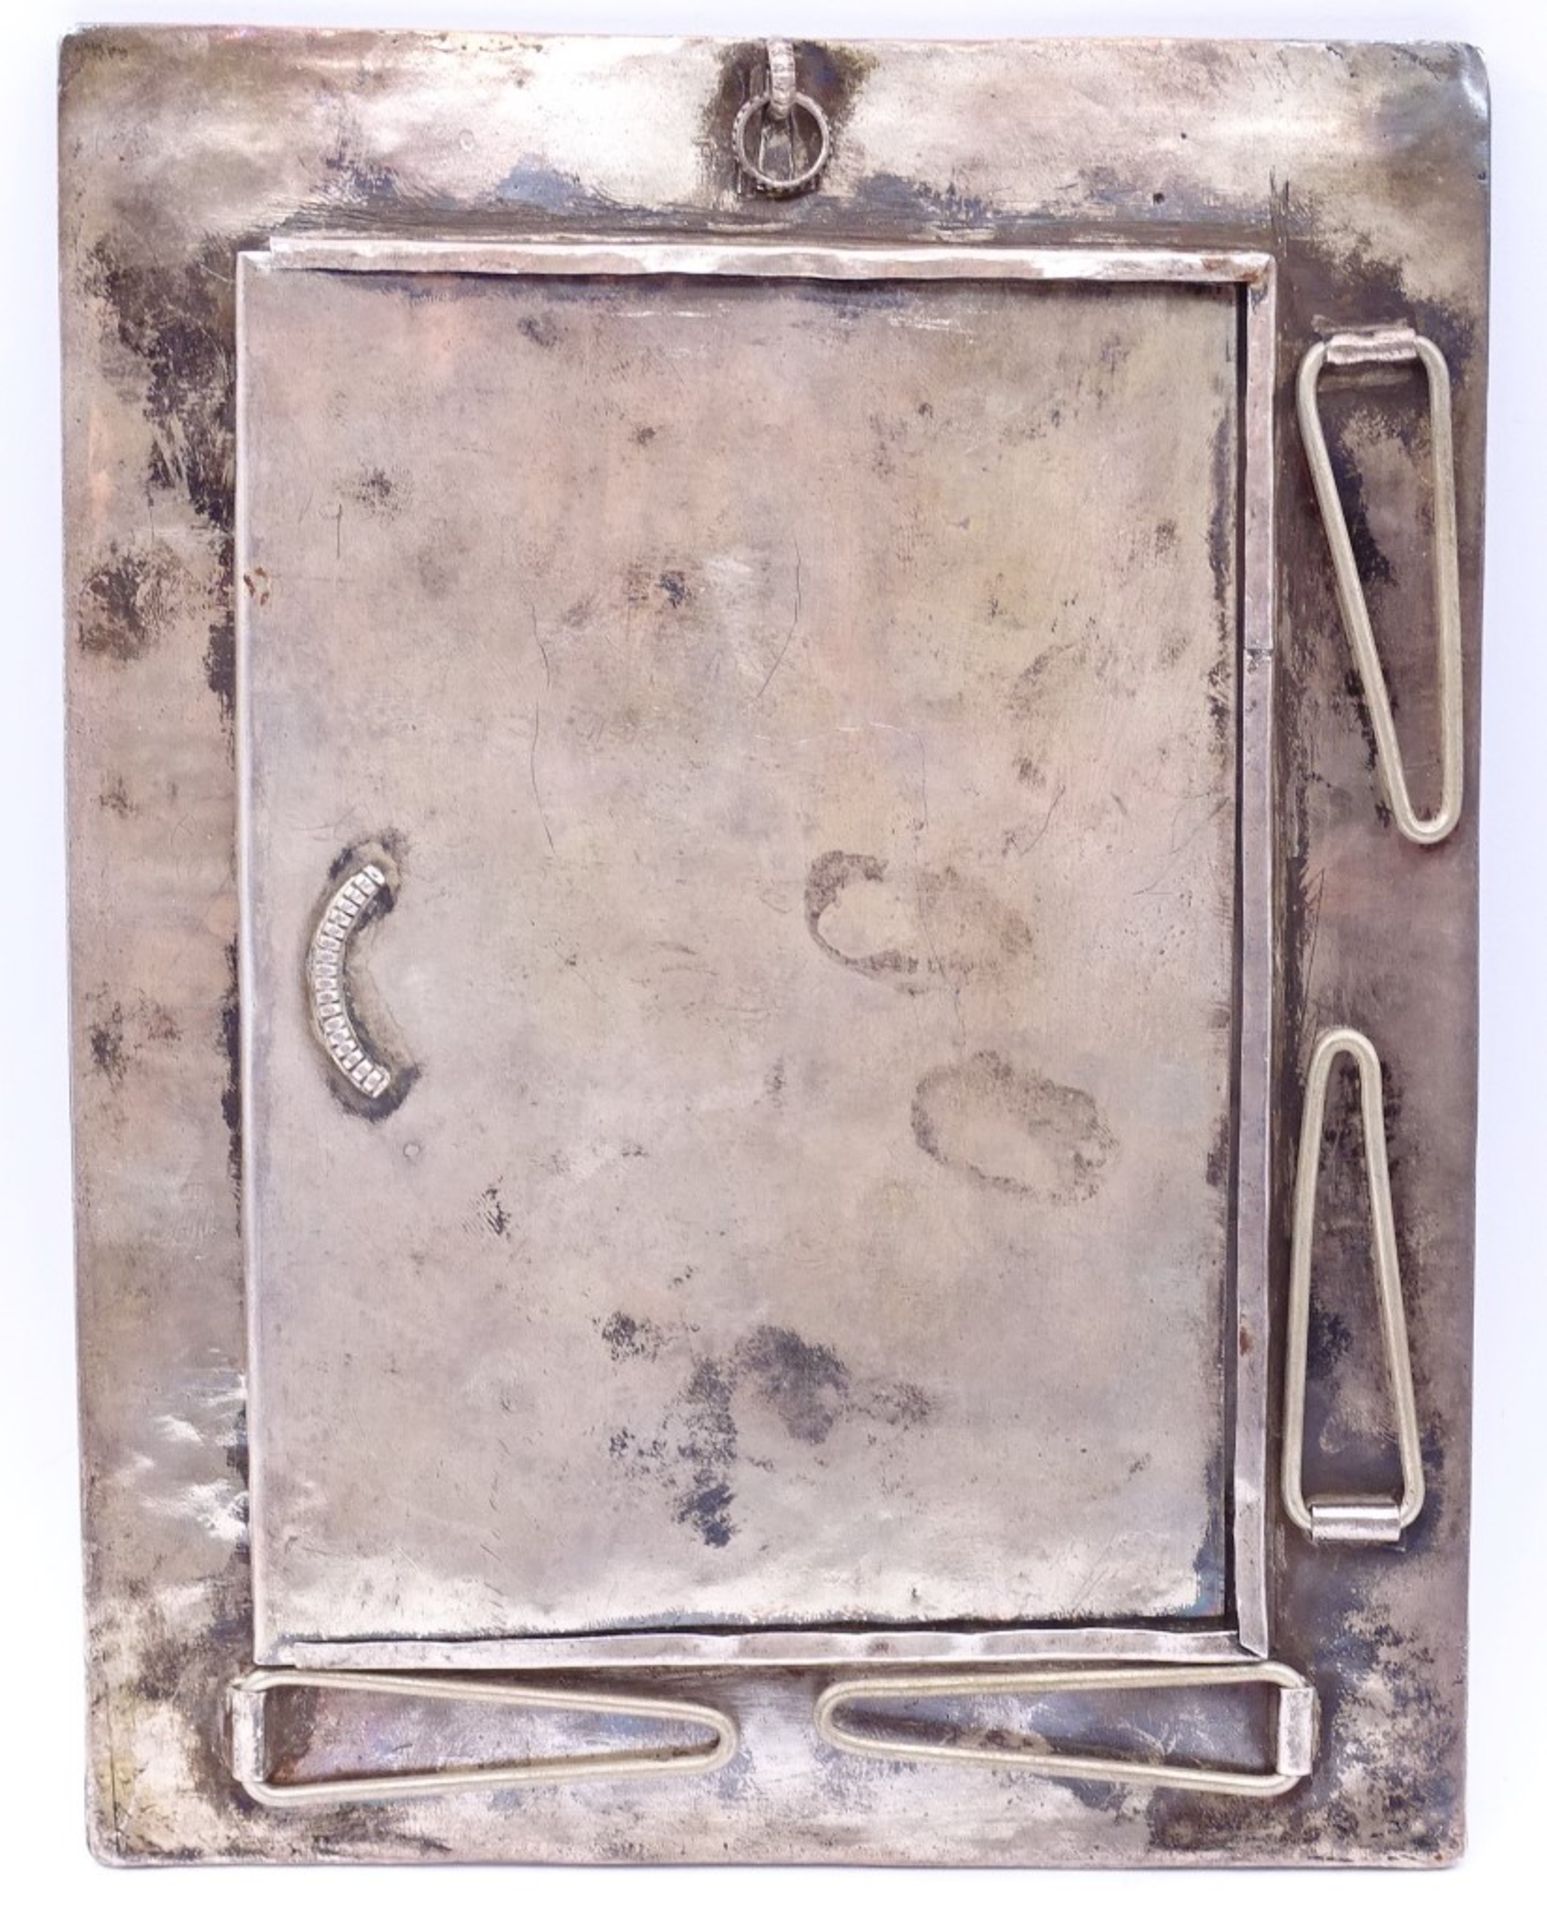 Tischfoto Rahmen in Sterling Silber mit Koralle,türkise und Lapislazuli, 17,5x13,5cm,278gr.,ohne - Bild 4 aus 4